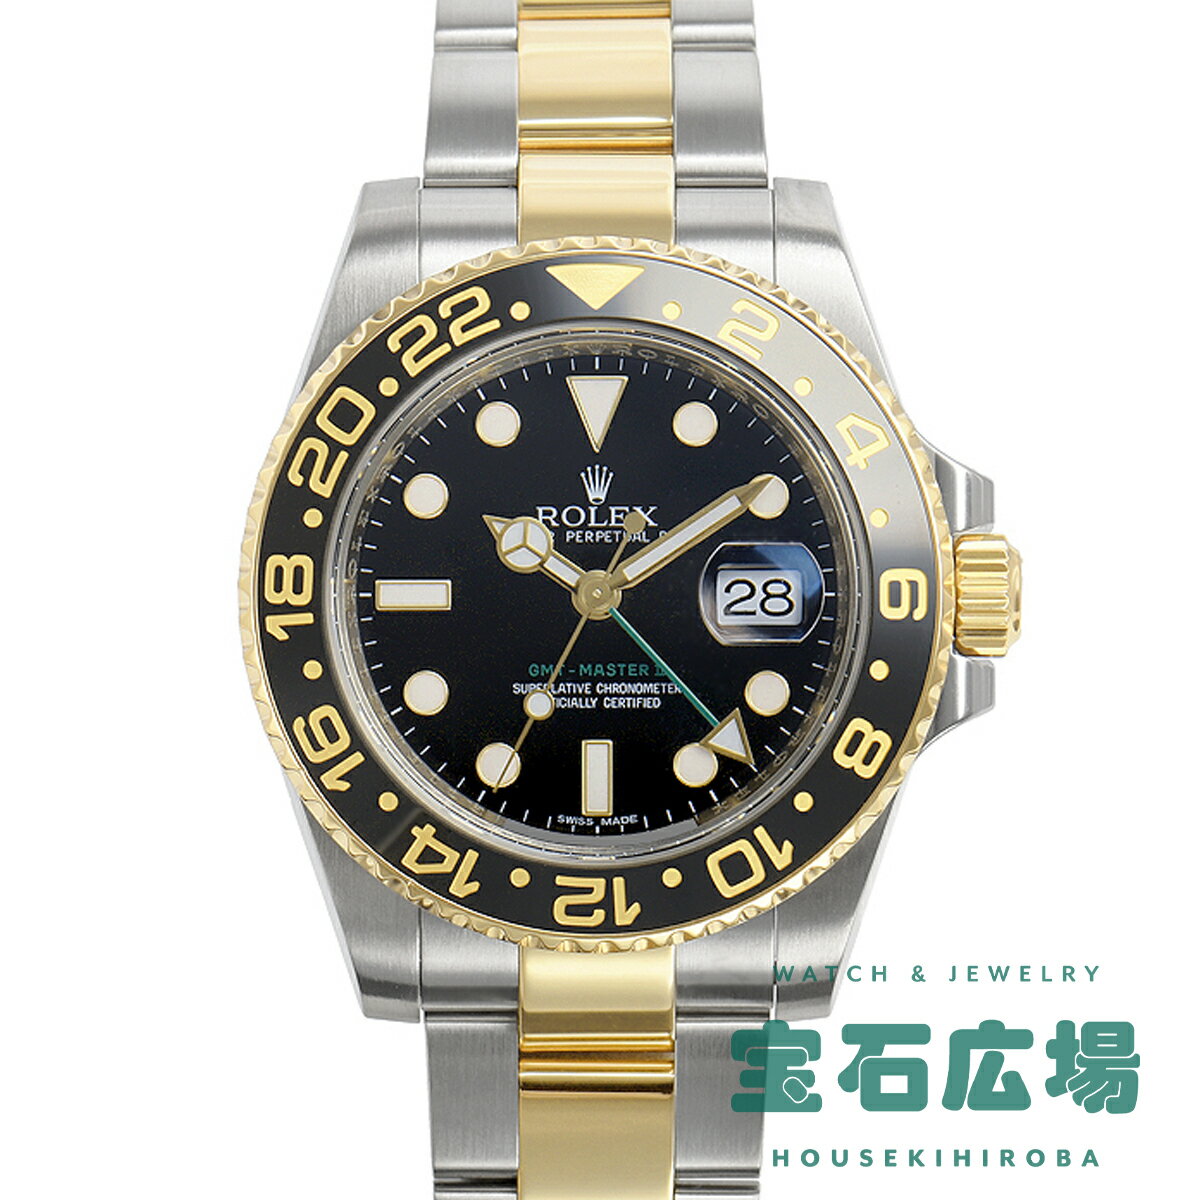 ロレックス ROLEX GMTマスターII 116713LN【中古】メンズ 腕時計 送料無料